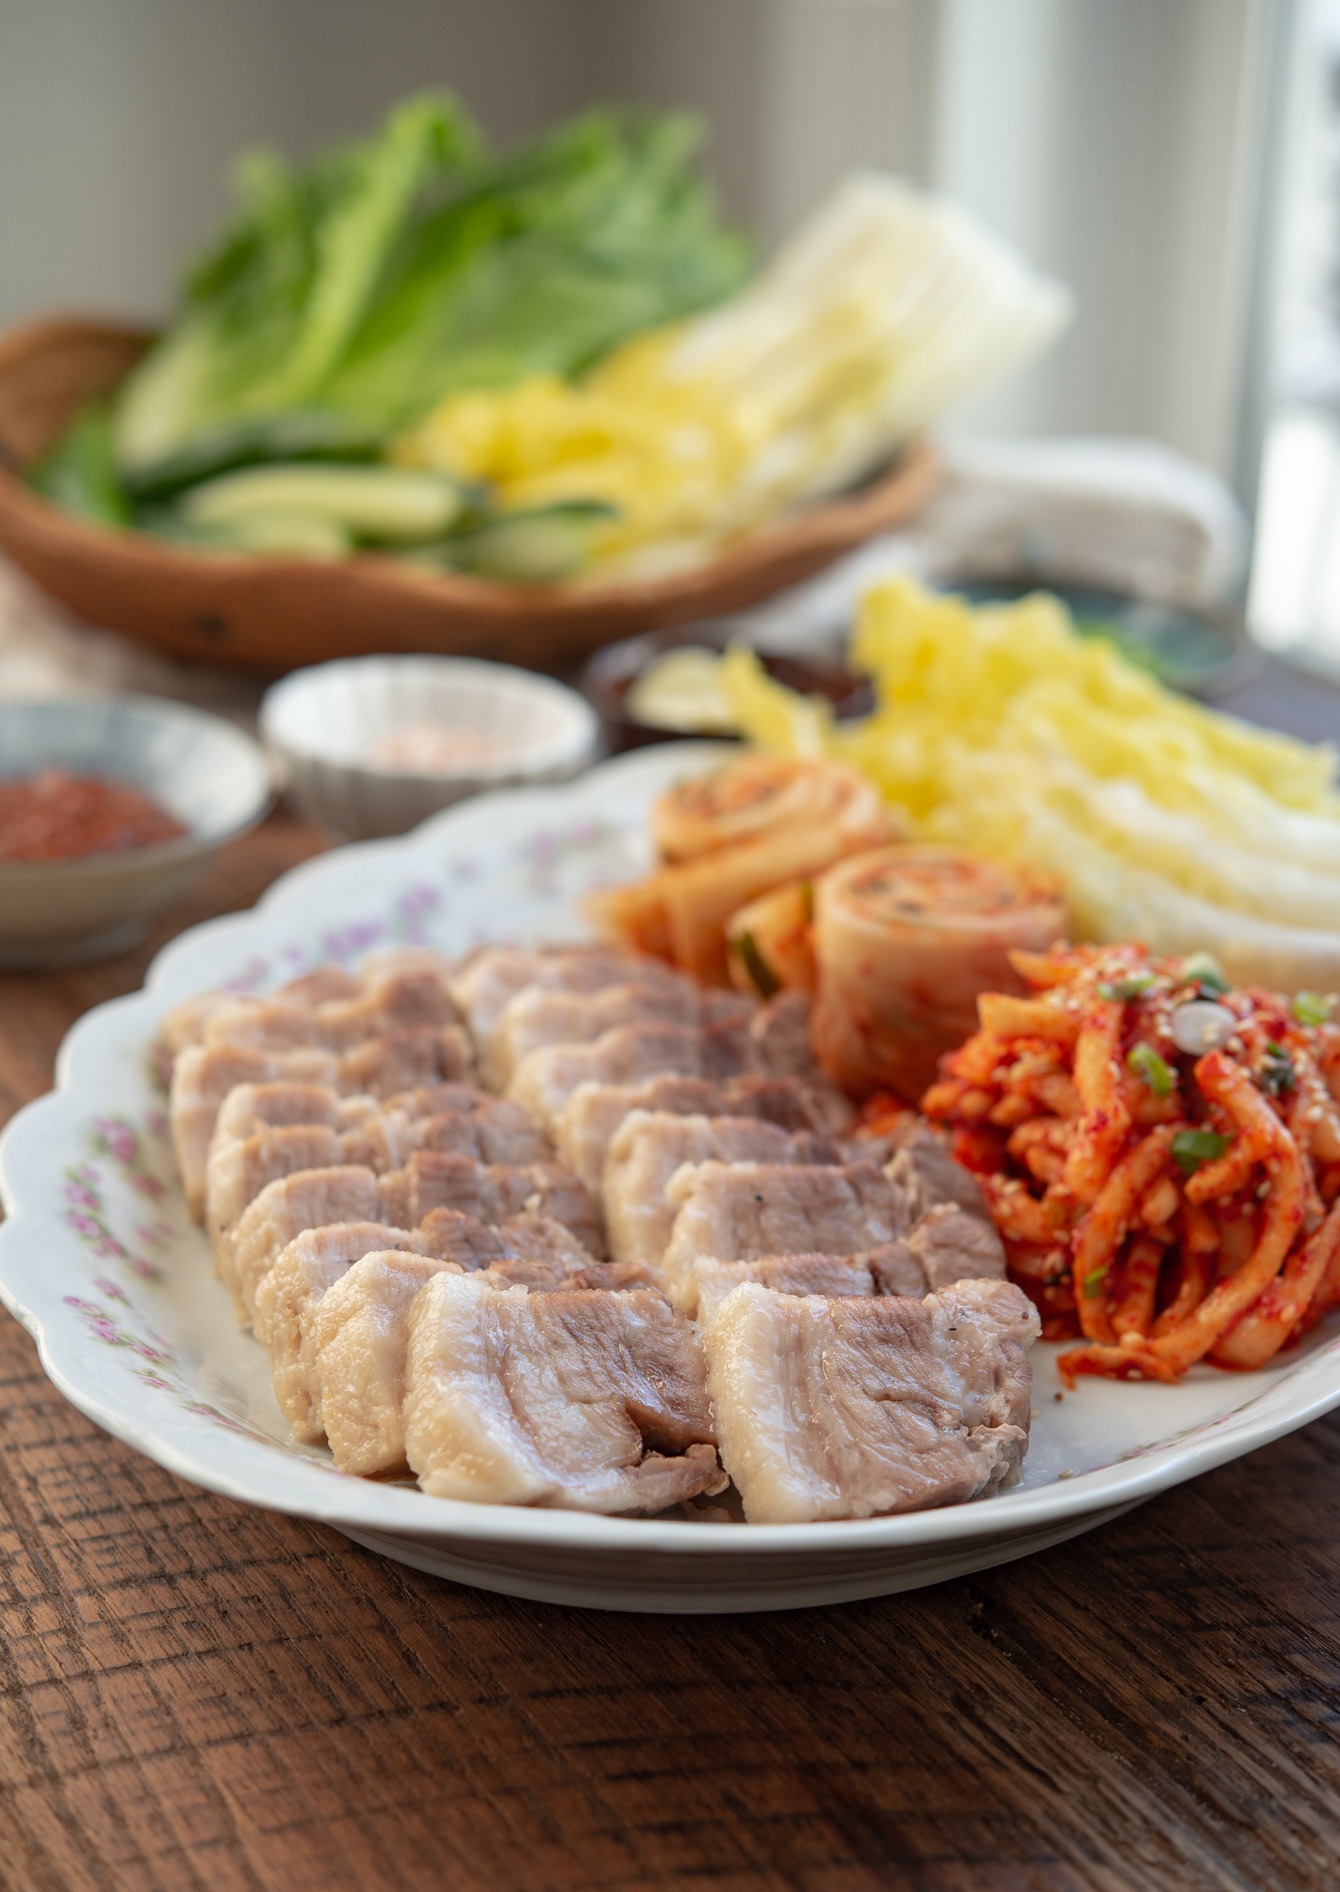 Korean bossam platter filled with pork belly, leaves, radish kimchi.